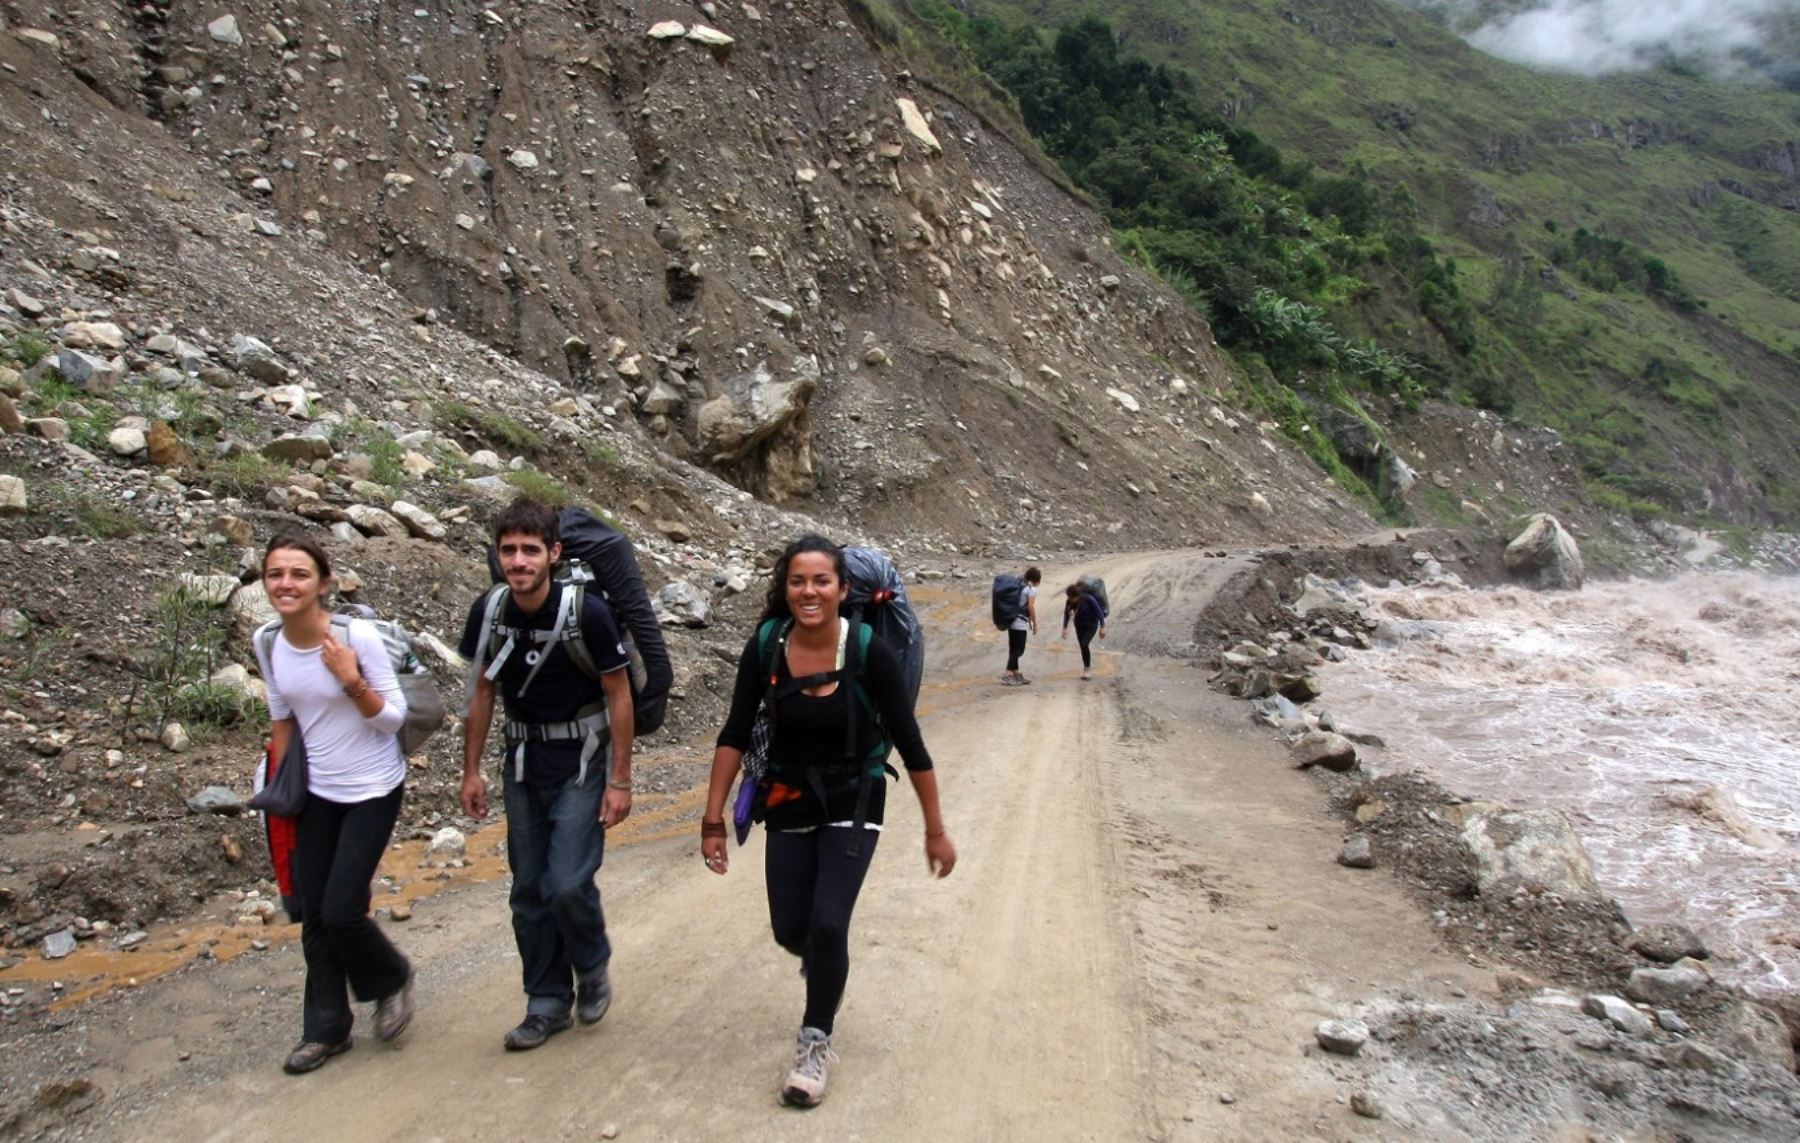 Los turistas que visitan Machu Picchu utilizando la vía alterna de Santa Teresa accederán a información turística.